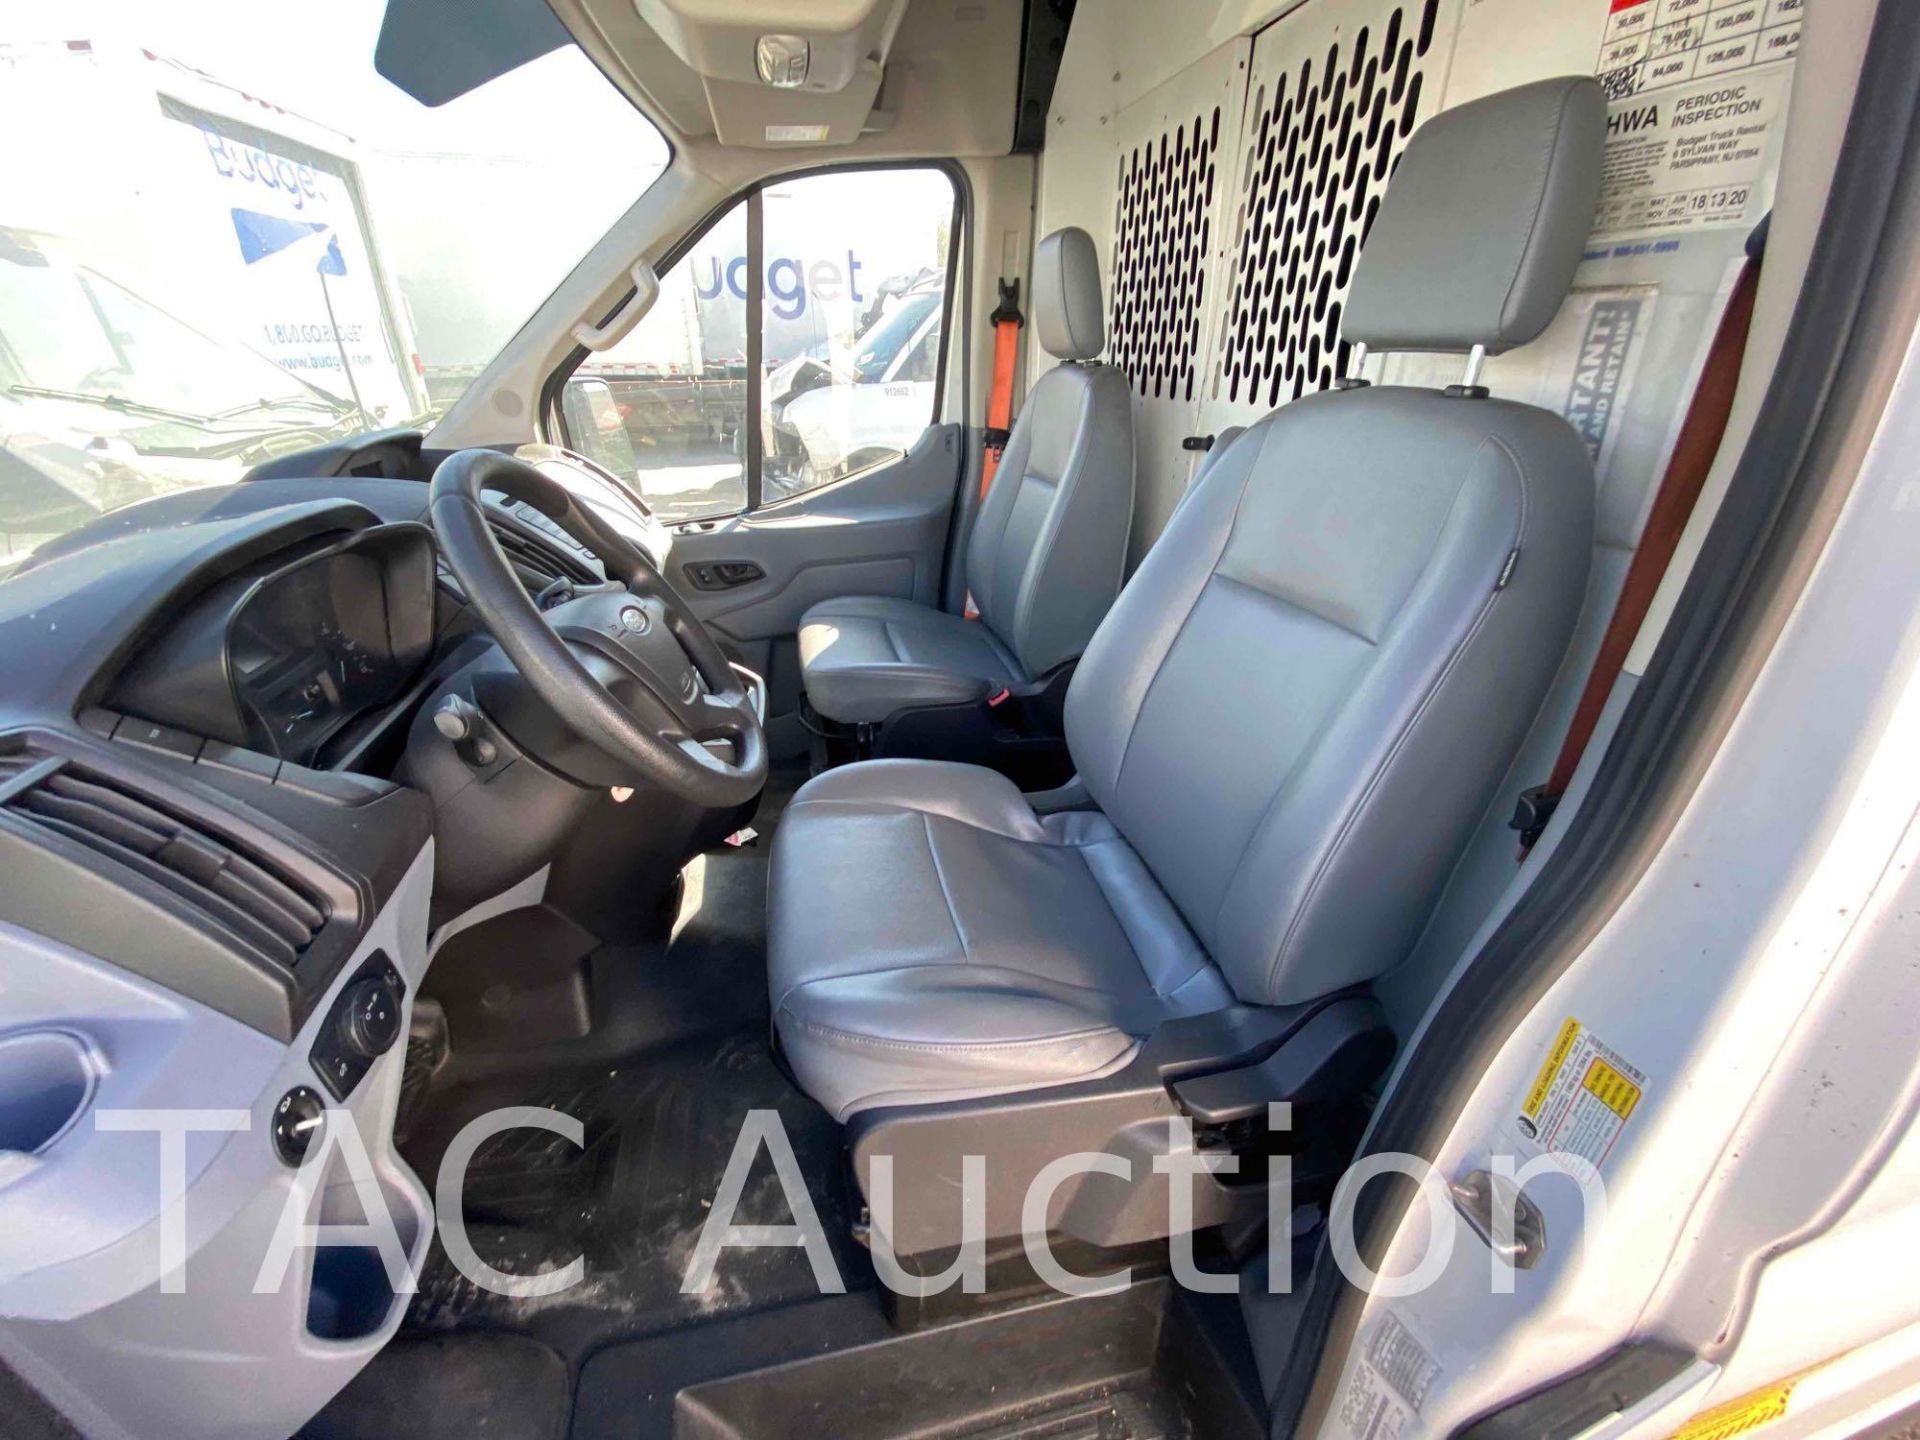 2019 Ford Transit 150 Cargo Van - Image 19 of 56